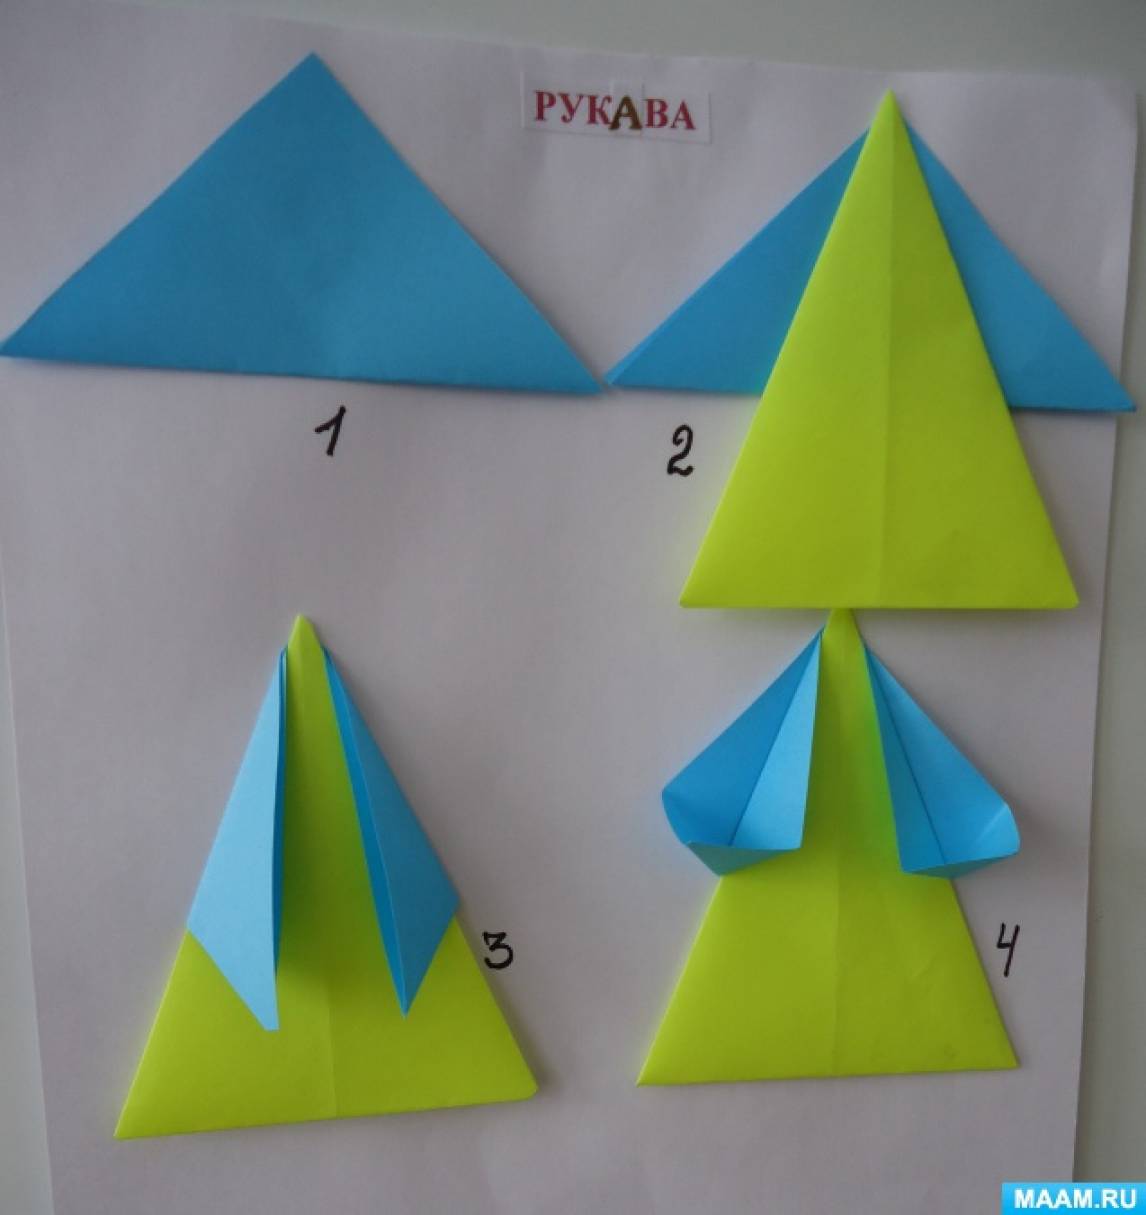 Конспекты оригами подготовительная группа. Конструирование из бумаги в старшей. Конструирование из бумаги в средней группе. Конструирование в старшей группе. Конструирование избумагив подготовительной груп.